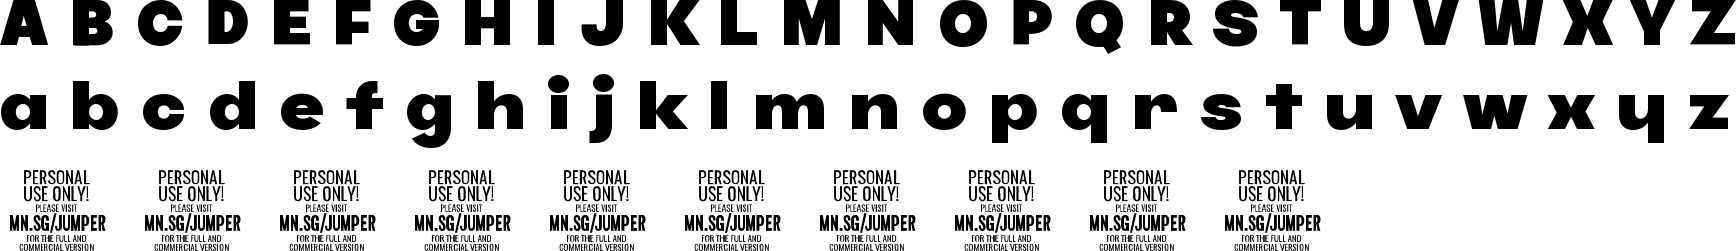 Jumper Font Character Map